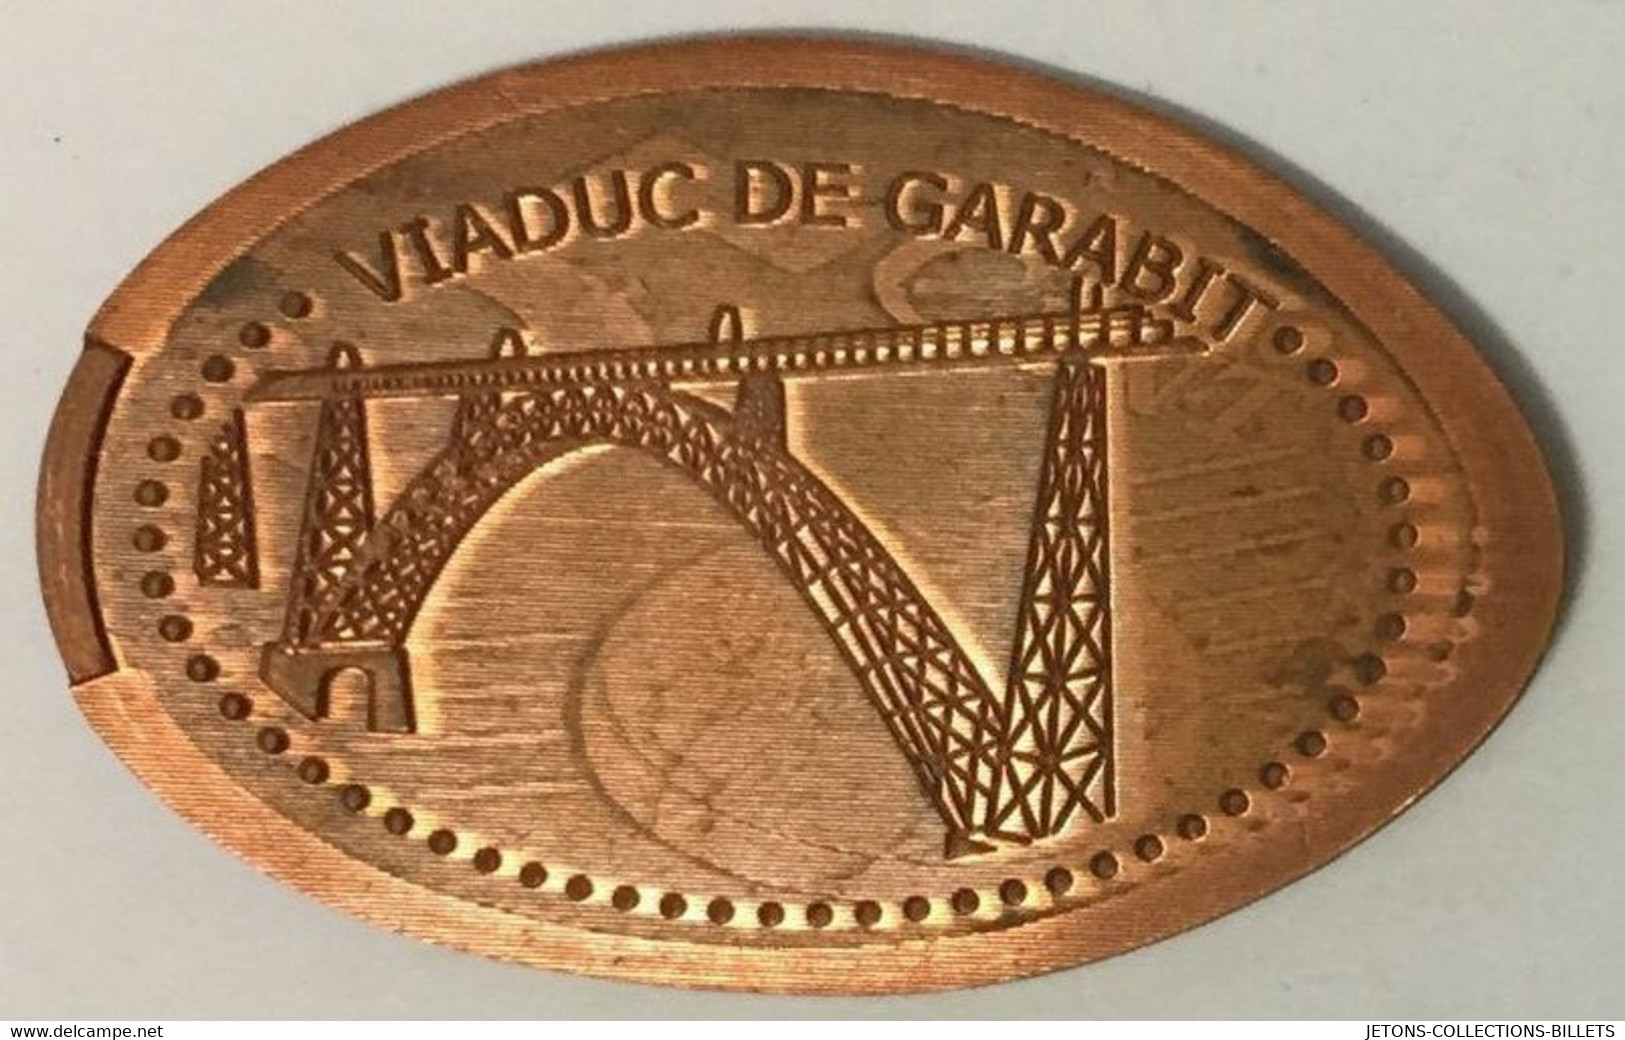 15 VIADUC DE GARABIT CONSTRUCTION PENNY ELONGATED COINS 1 PIÈCE ÉCRASÉE TOURISTIQUE MEDALS TOKENS MONNAIE - Souvenir-Medaille (elongated Coins)